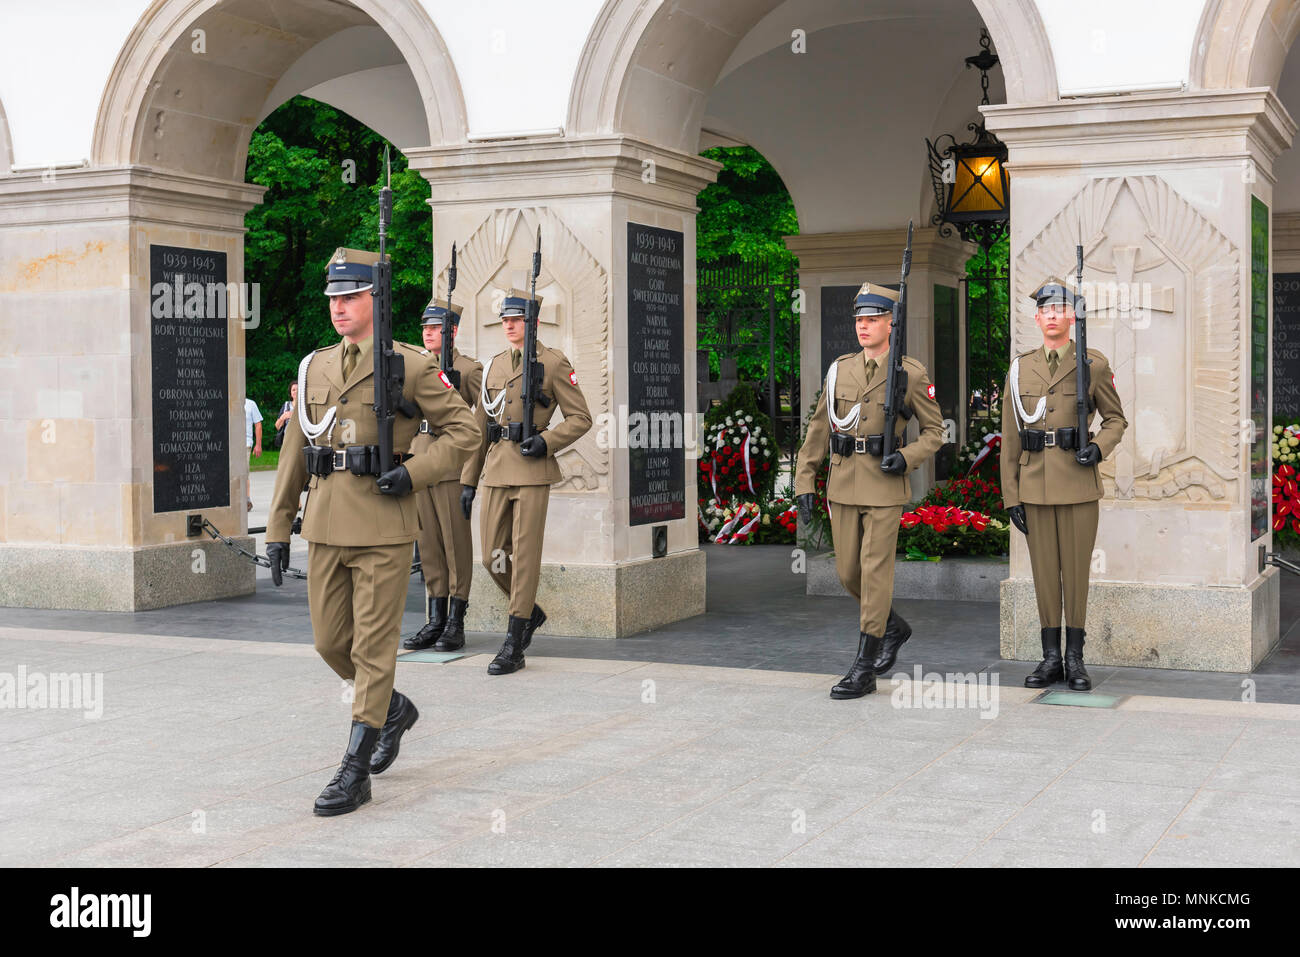 Tombe Soldat inconnu Varsovie, vue d'une garde d'honneur stationnée à la tombe du Soldat inconnu sur la place Pilsudski à Varsovie, Pologne. Banque D'Images